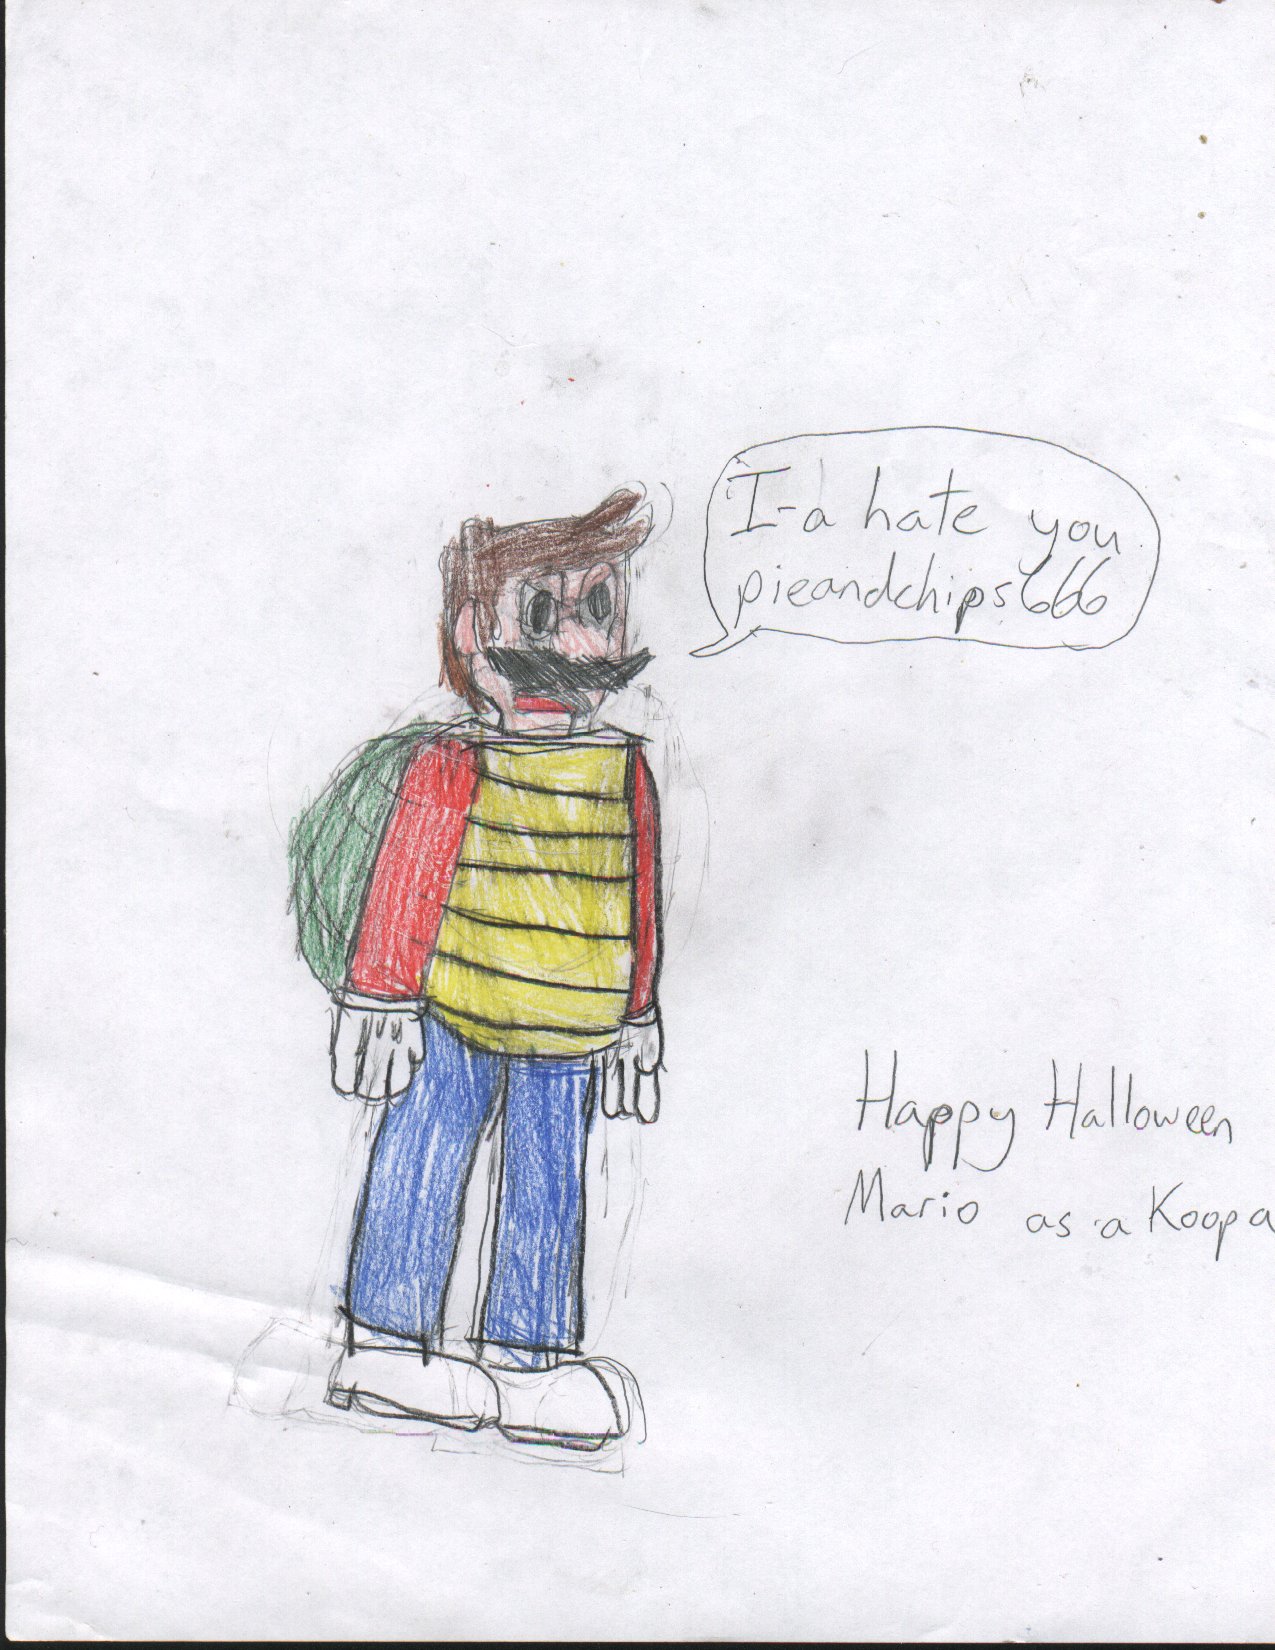 Happy Halloween: Mario as a Koopa Troopa by pieandchips666